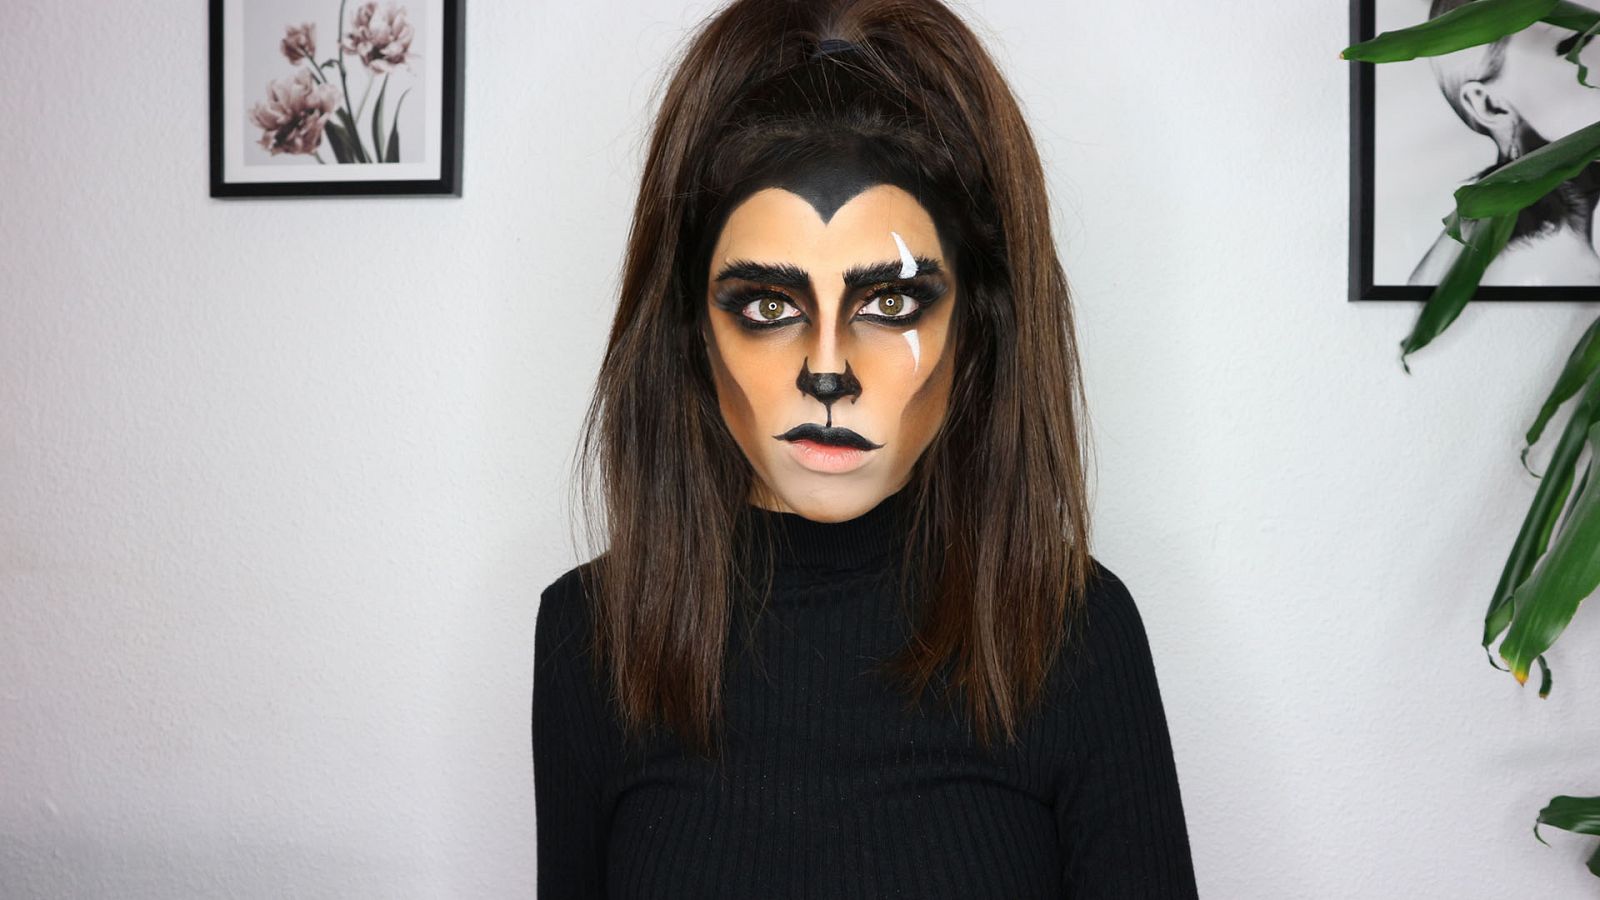 #Tendencias - Inspiración Beauty: Cómo hacer un maquillaje de Halloween inspirado en 'El rey león'